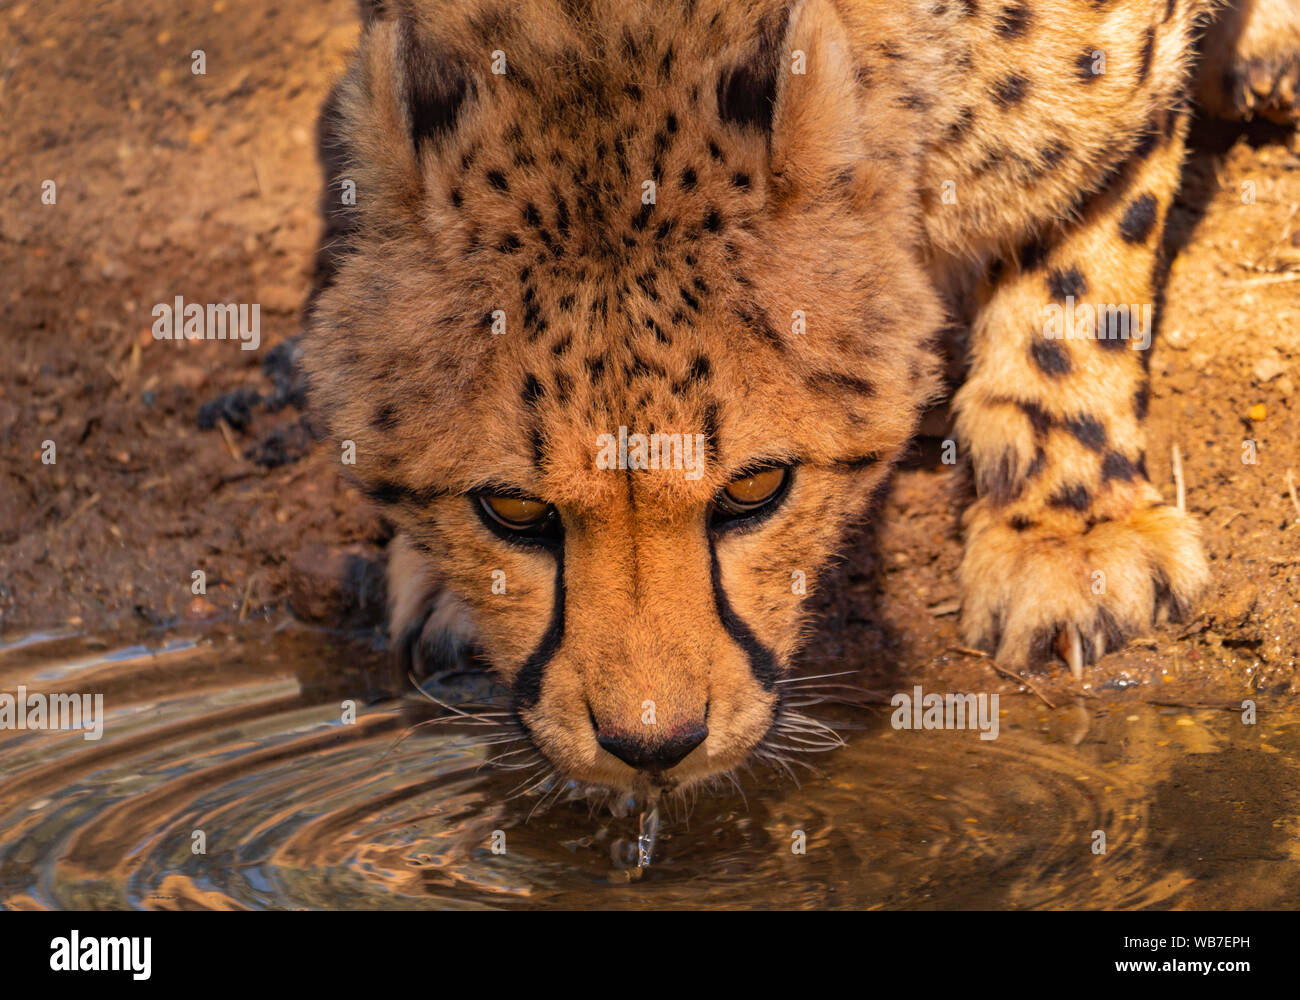 Ein Gepard, Acinonyx jubatus, Trinkwasser in ihrem Gehege, wo es in einer Zucht in Gefangenschaft Programm ist. Stockfoto